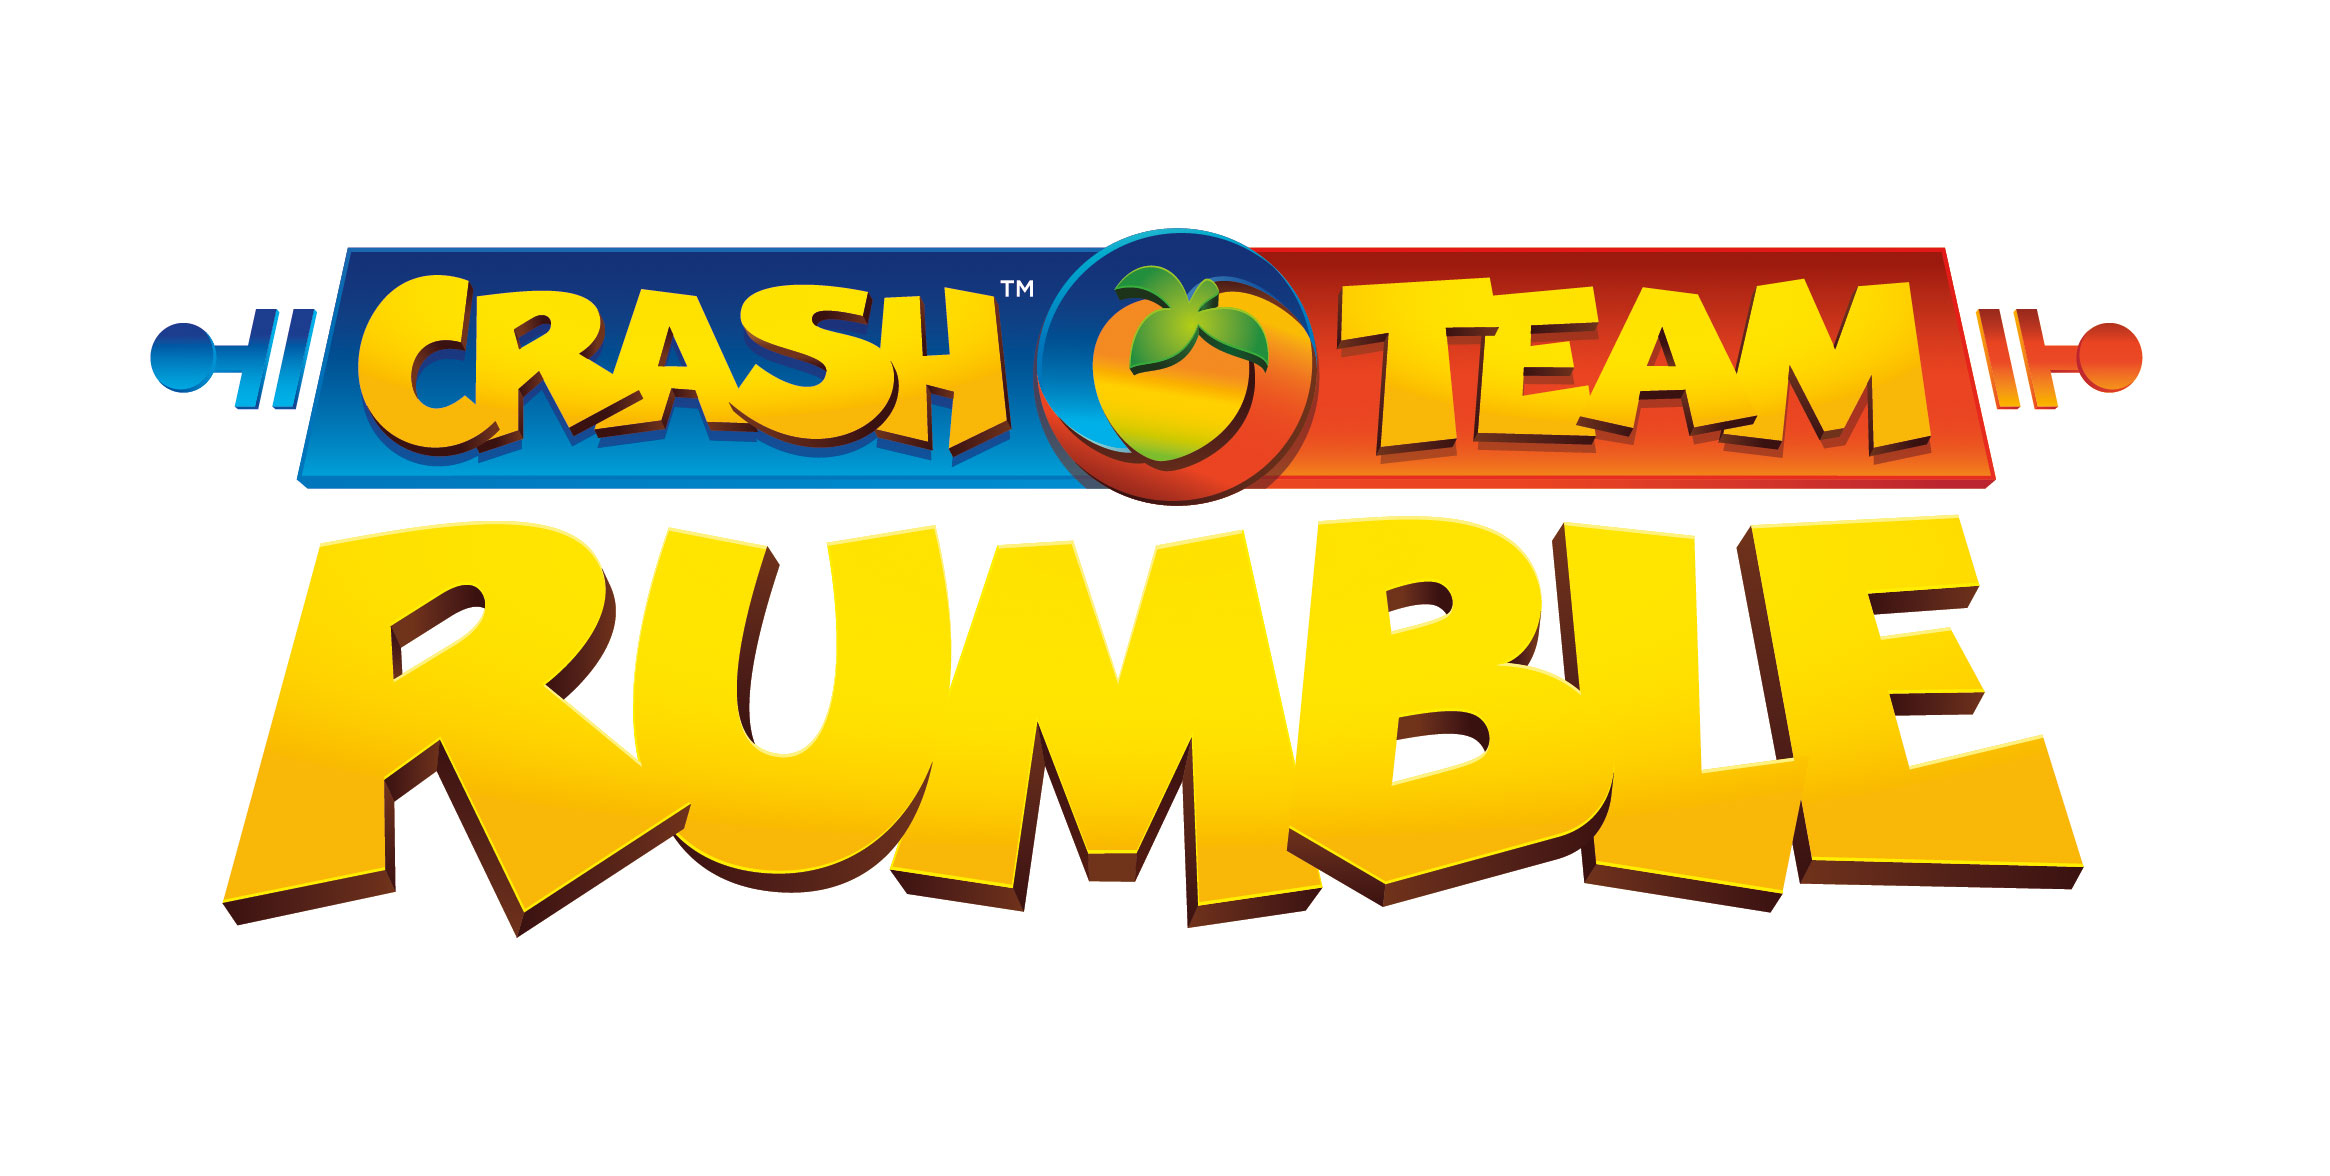 Prepare-se para uma Briga de N. Sane! O Crash Team Rumble™ Já